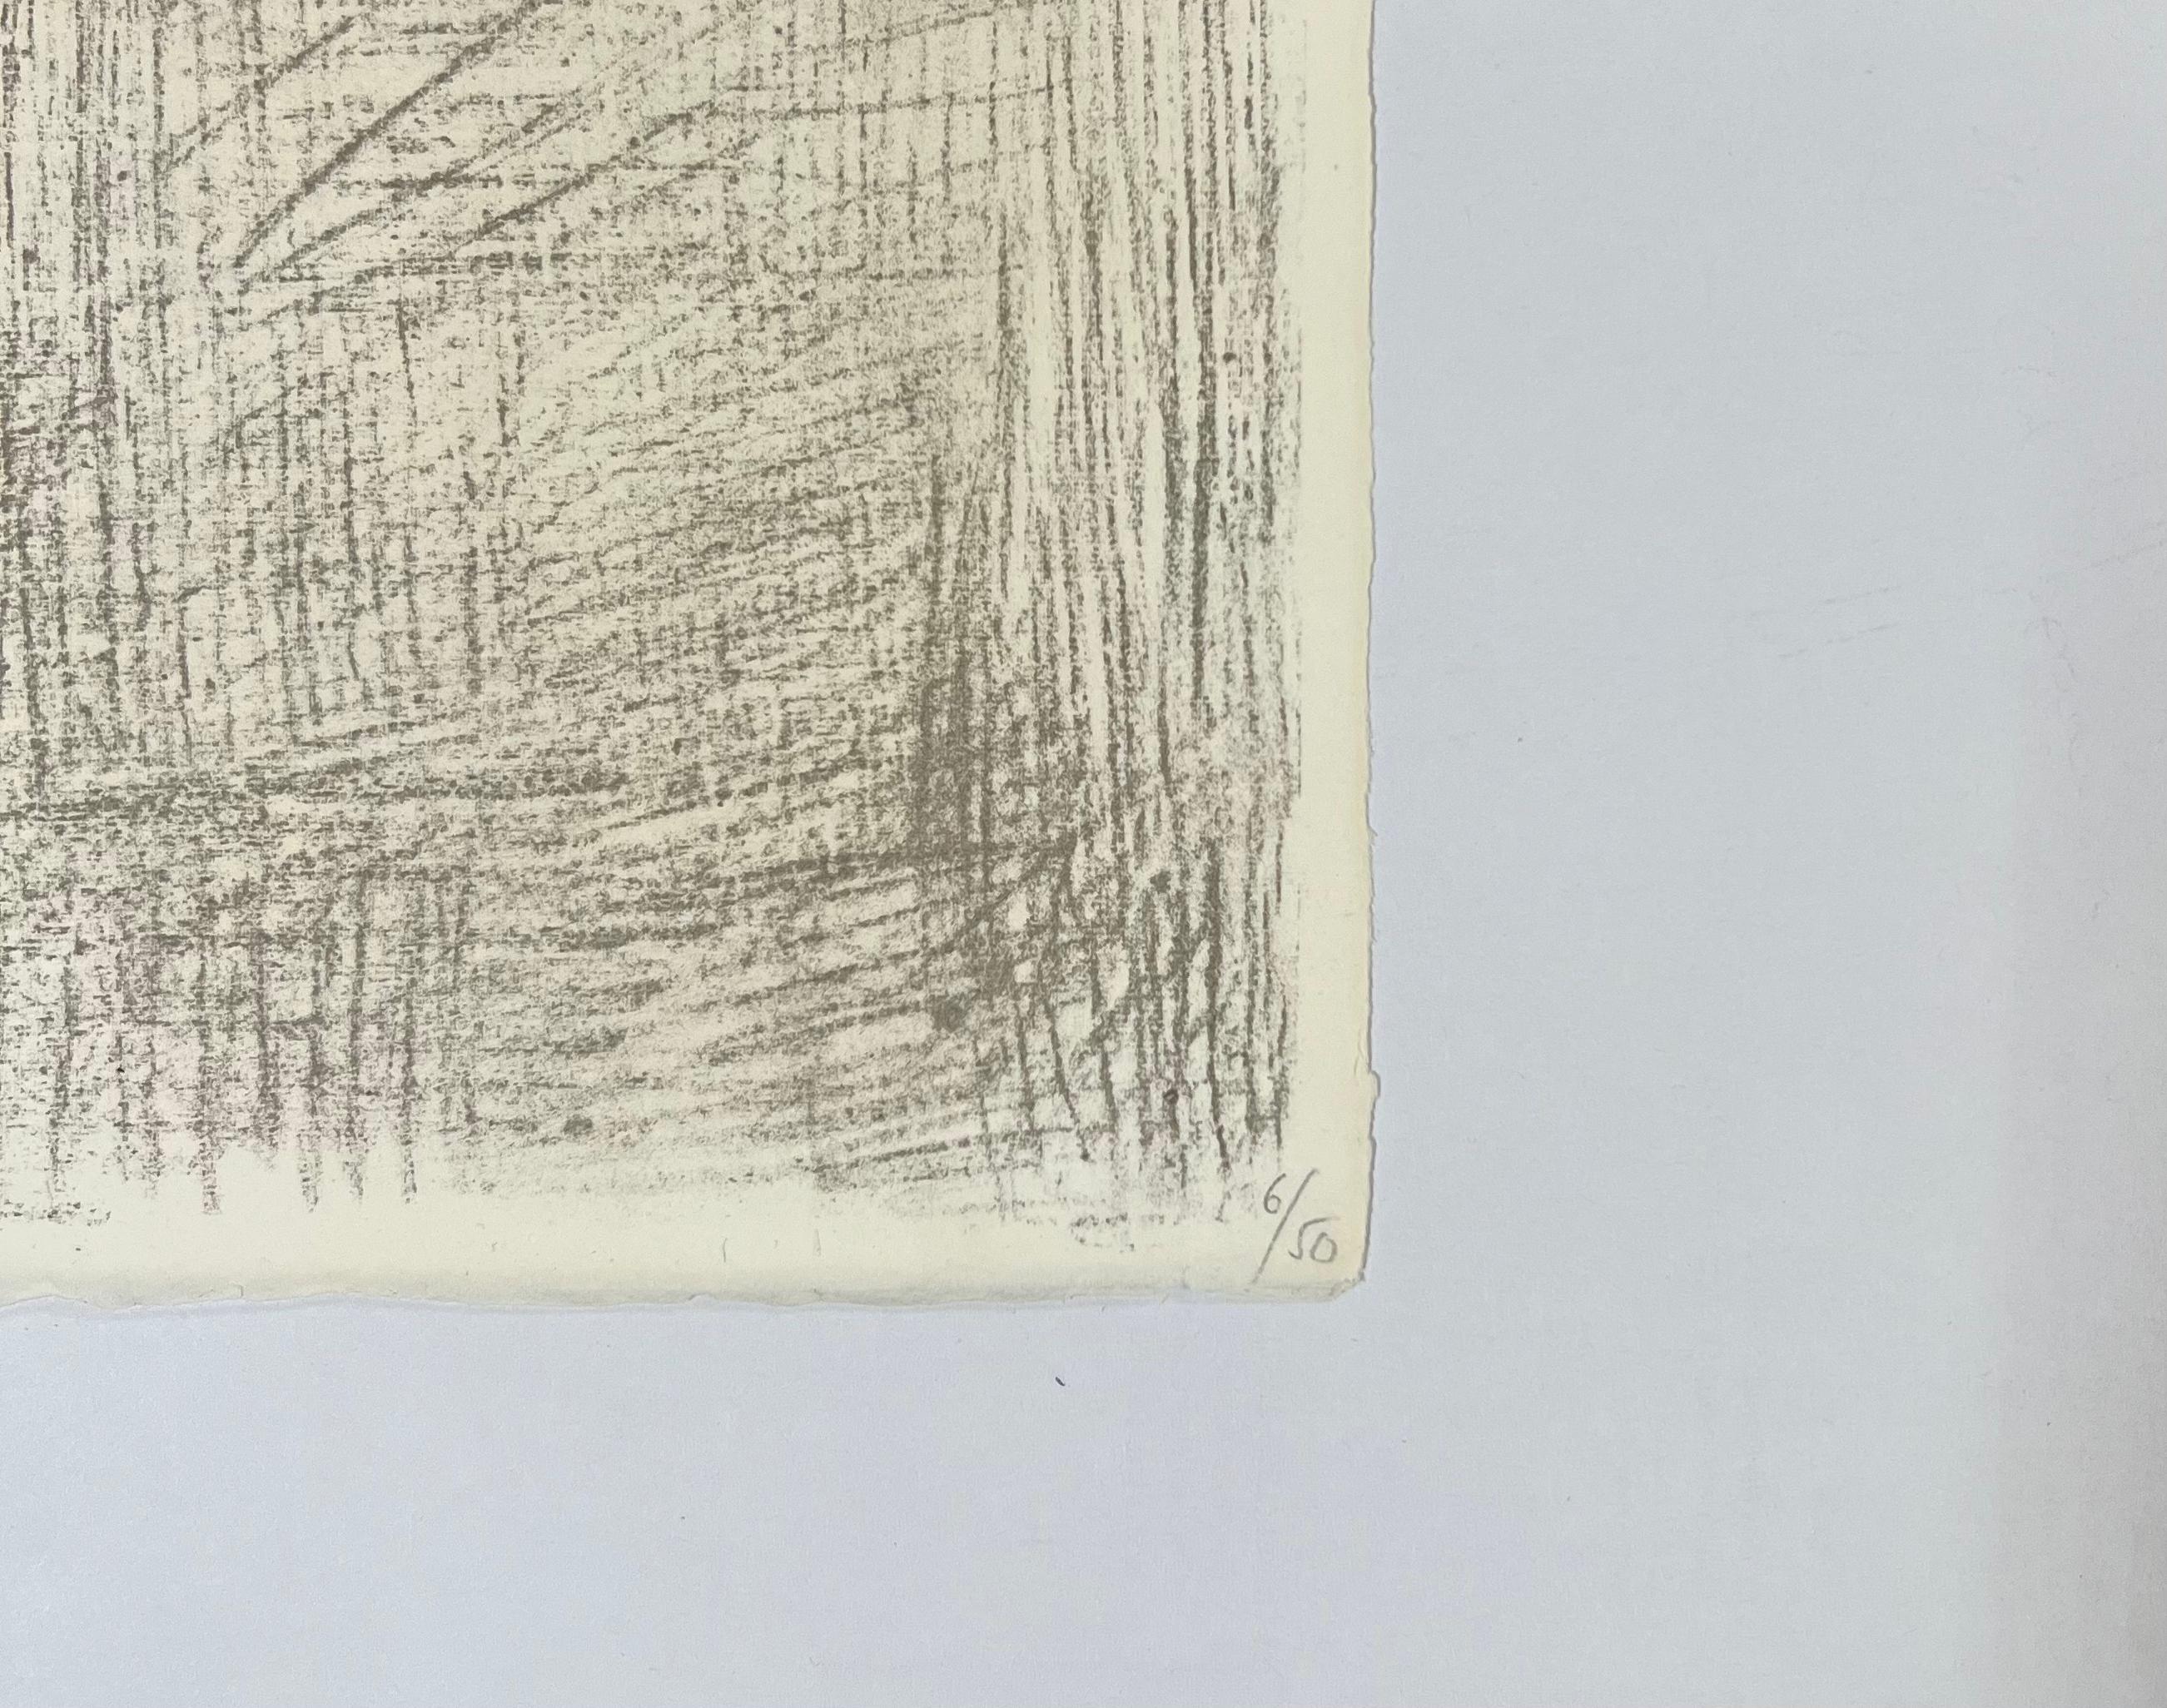 Pablo Picasso
Le Petit Dessinateur (The Little Artist), 1956
Lithographie en cinq couleurs
Signé à la main au crayon et numéroté 6/50 d'une édition de 50 exemplaires.
Vallauris, 18 mai 1956
Référencé comme #263 dans le catalogue raisonné de Mourlot,